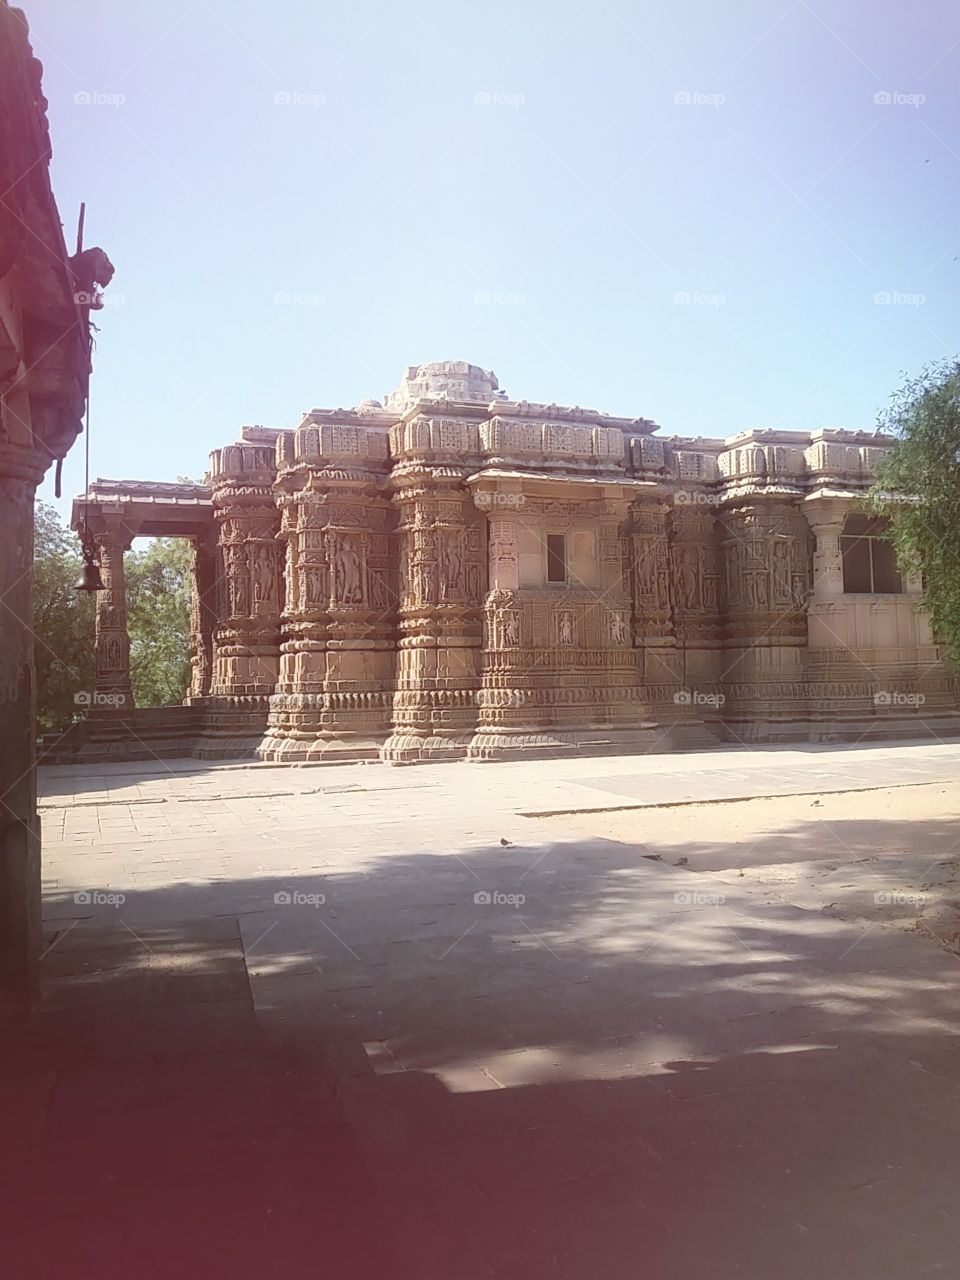 San Tempal Gujarat india